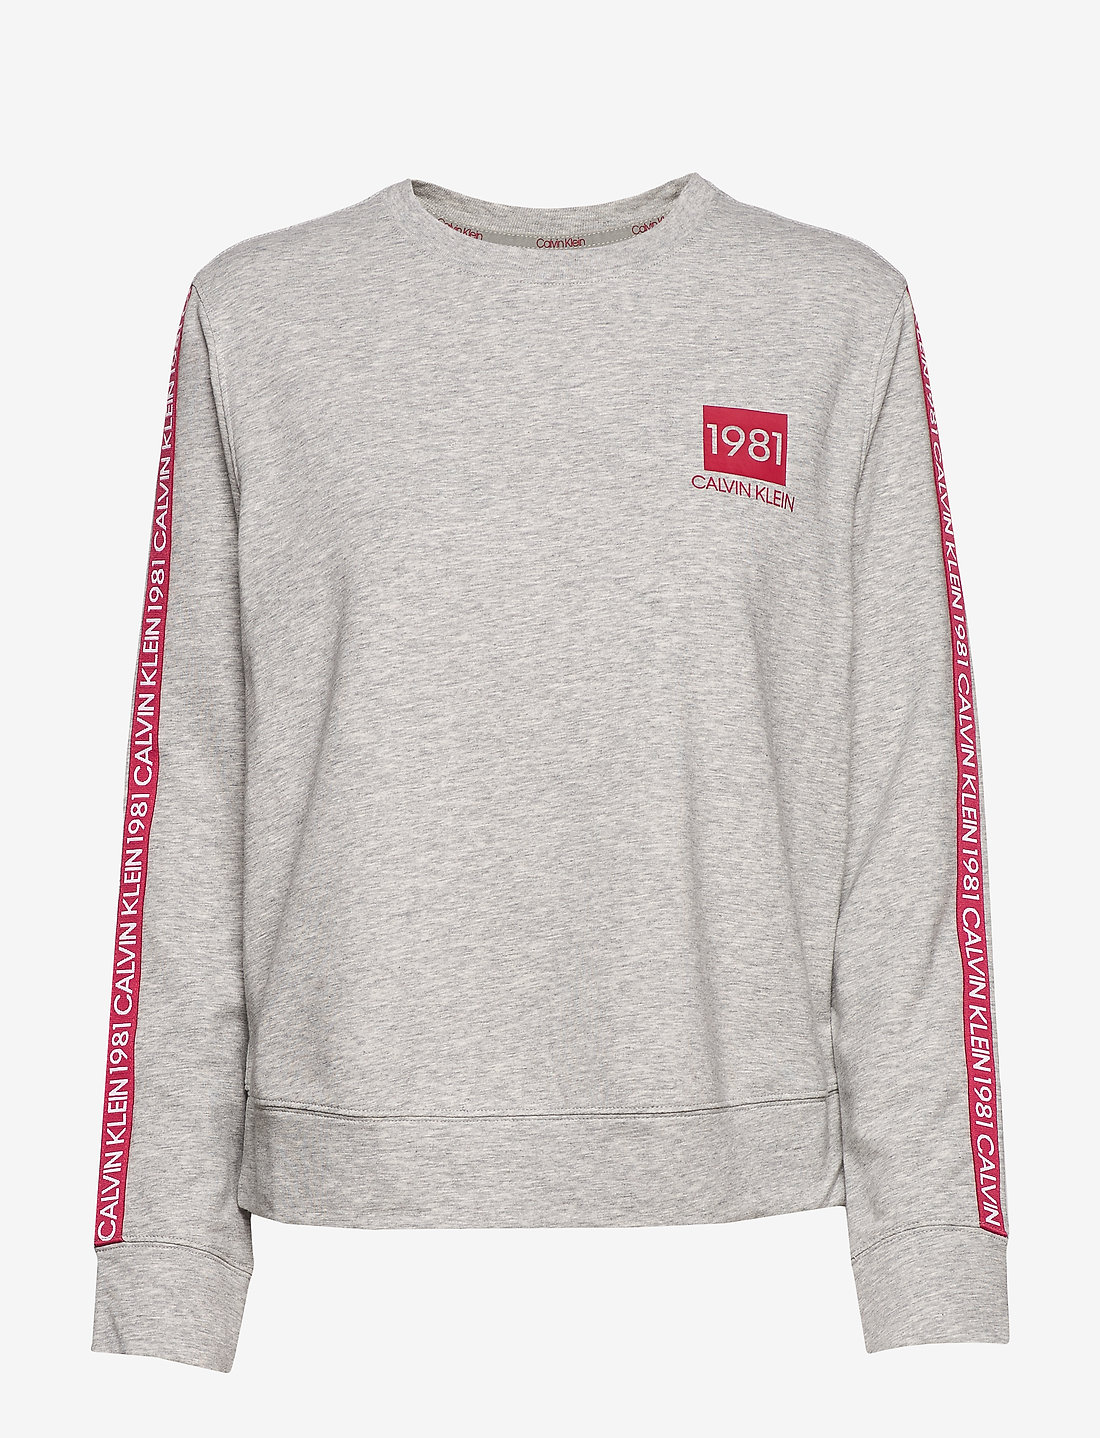 Calvin Klein L/s Sweatshirt (Grey Heather/Grey) - 79.90 €